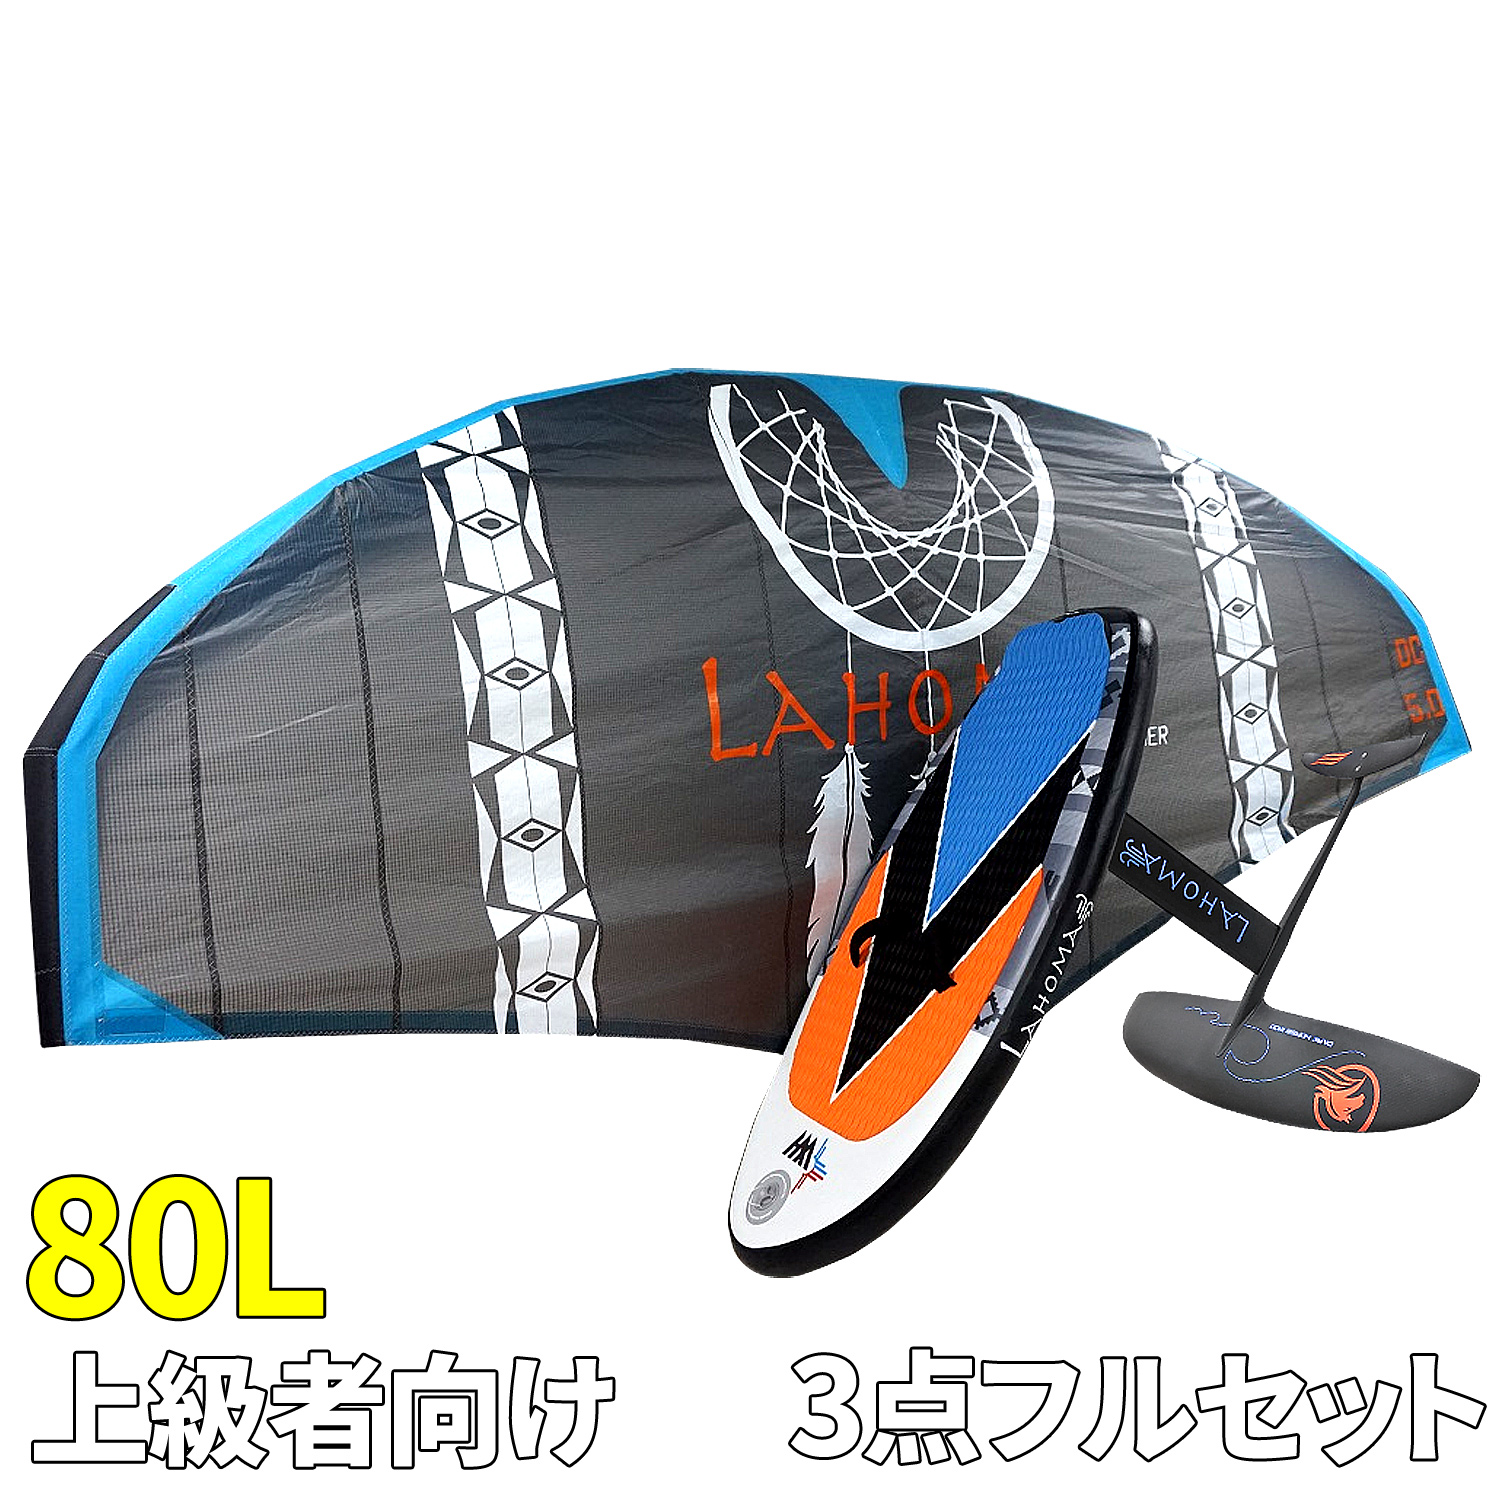 【楽天市場】ウイングサーフィン 145Lセット 初・中級者 【 3点フル 